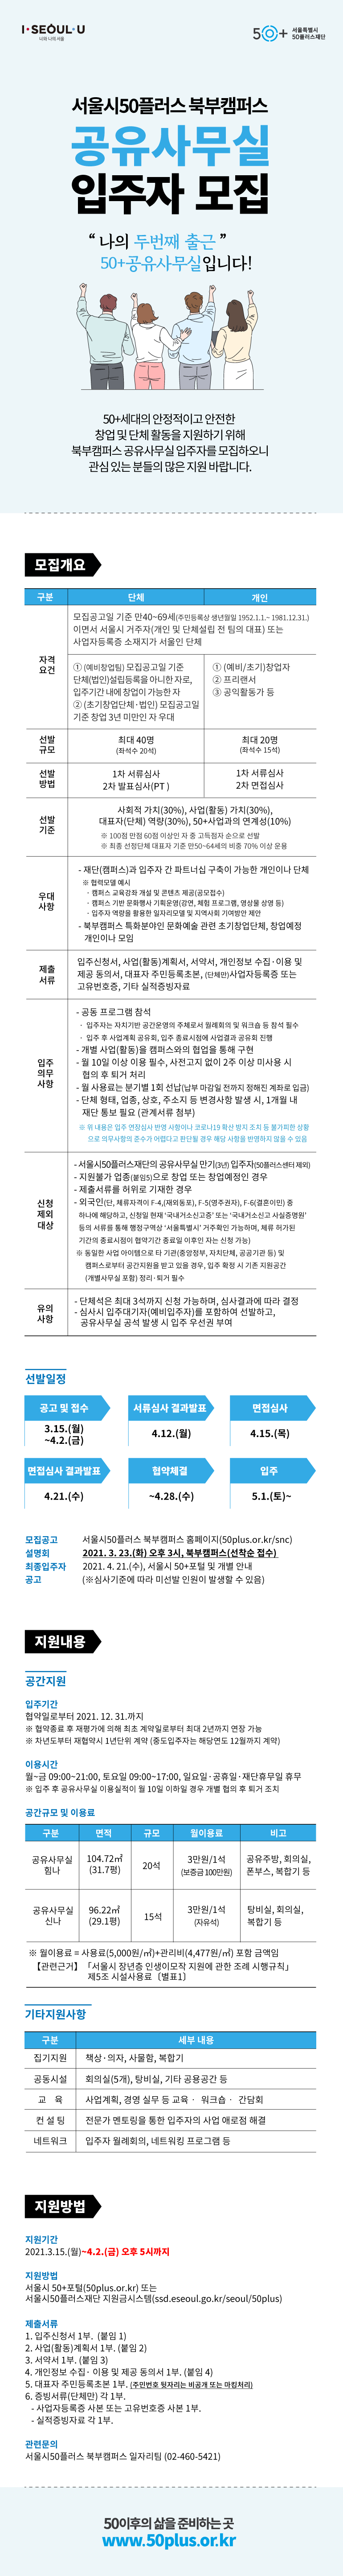 붙임3 서울시50플러스 북부캠퍼스 공유사무실 입주자 모집.png